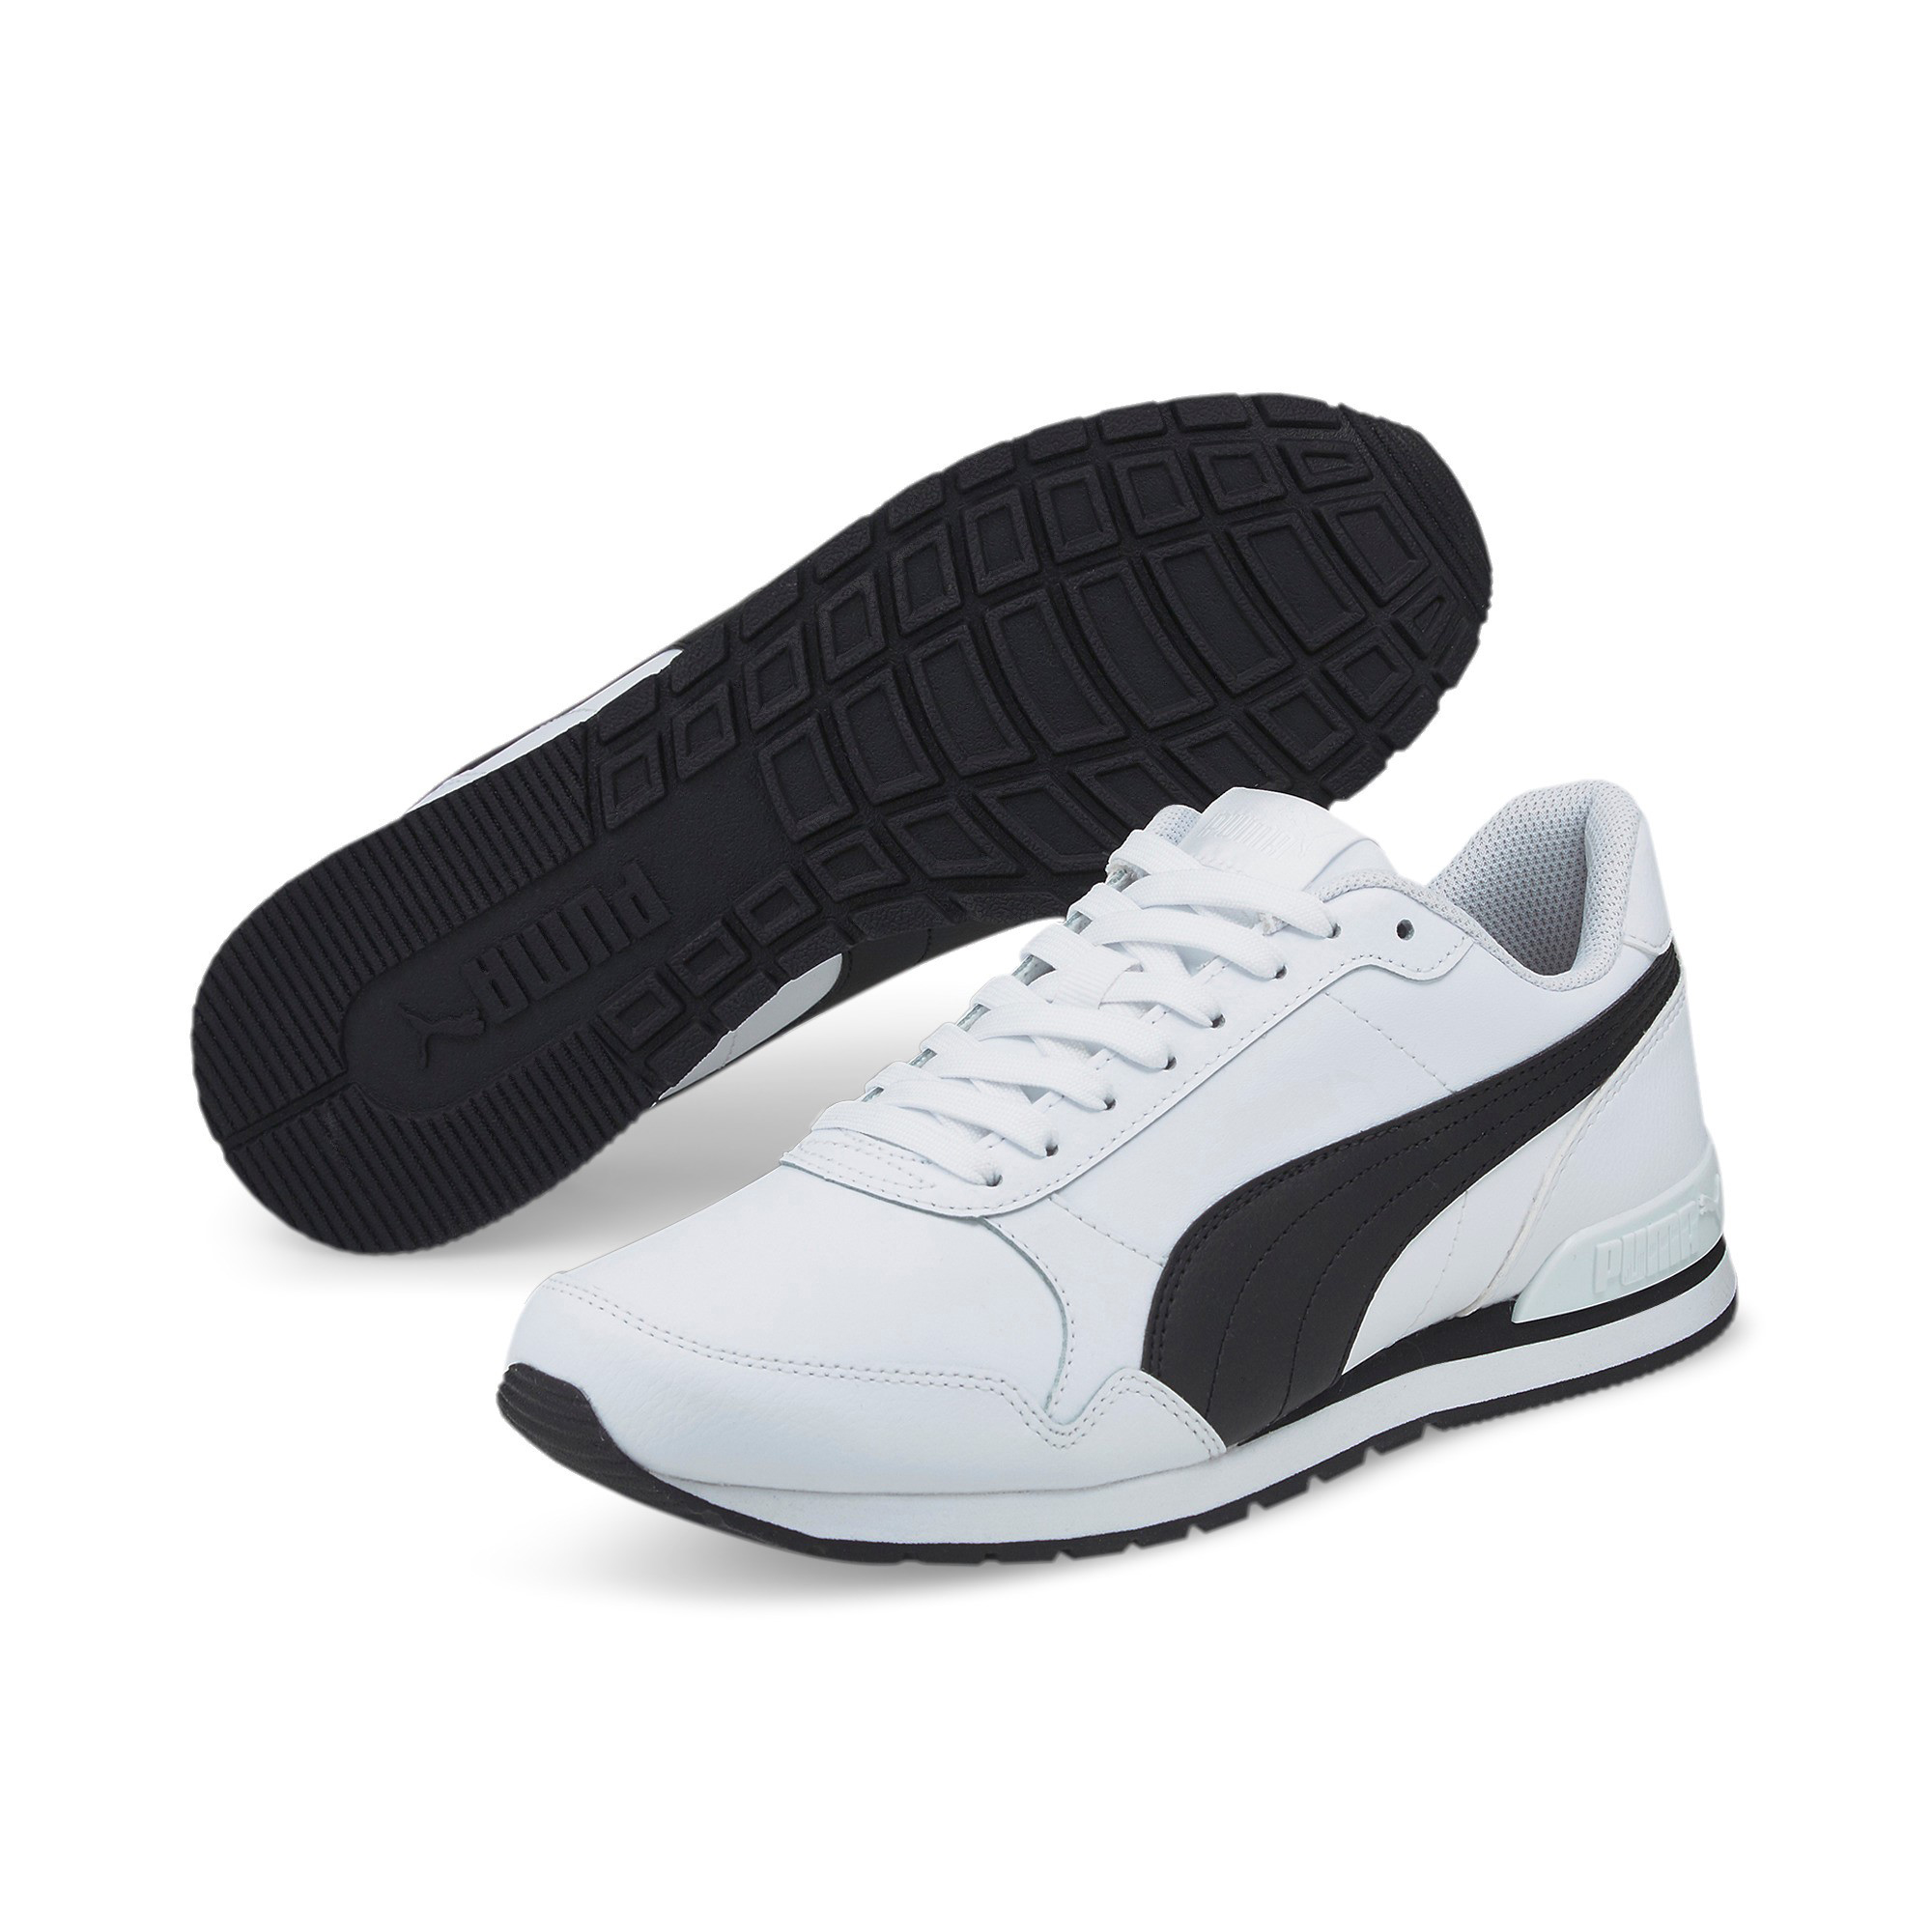 Puma Unisex-Erwachsene St Runner V2 Full L Sneaker, White Black, 44 EU